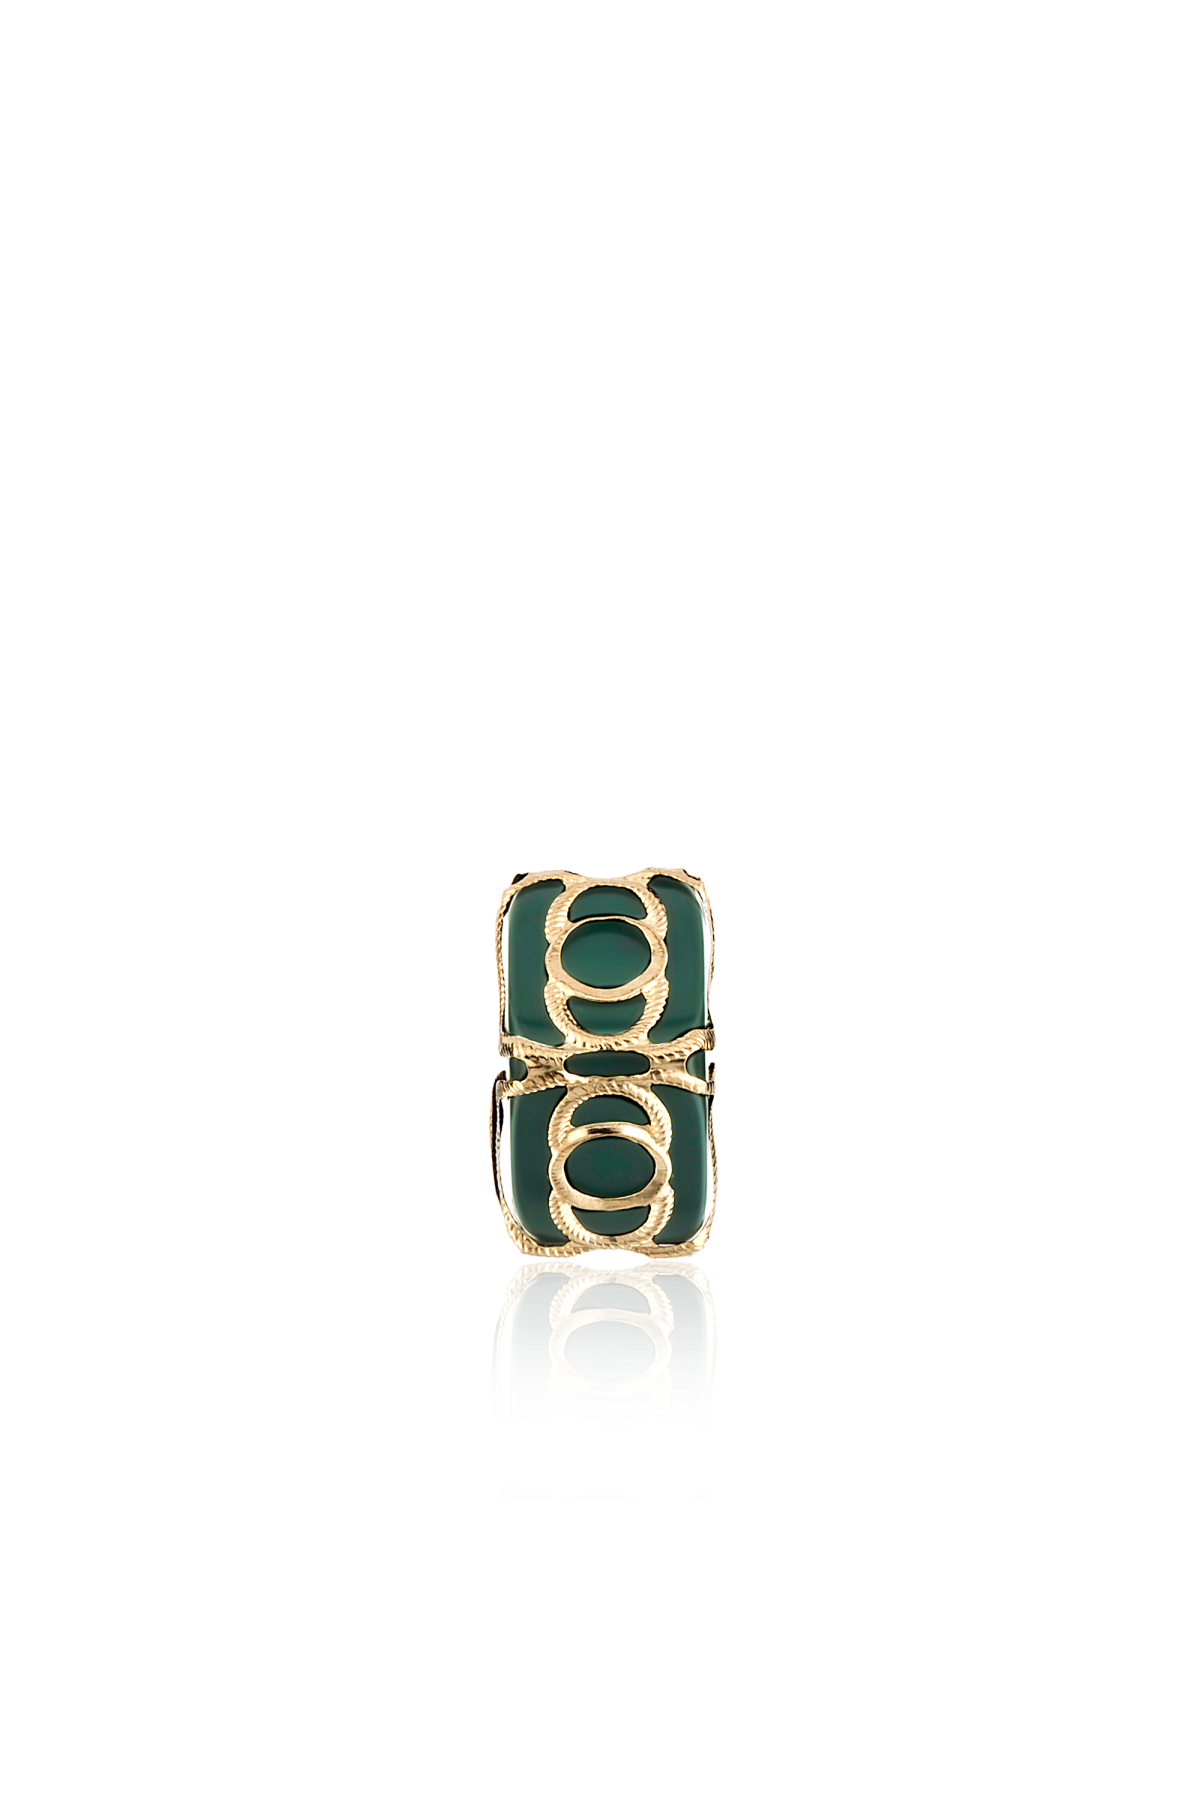 Altın Telkari Motifli Yuvarlak Desenli Yeşil Küp Bodrum Nazarlığı